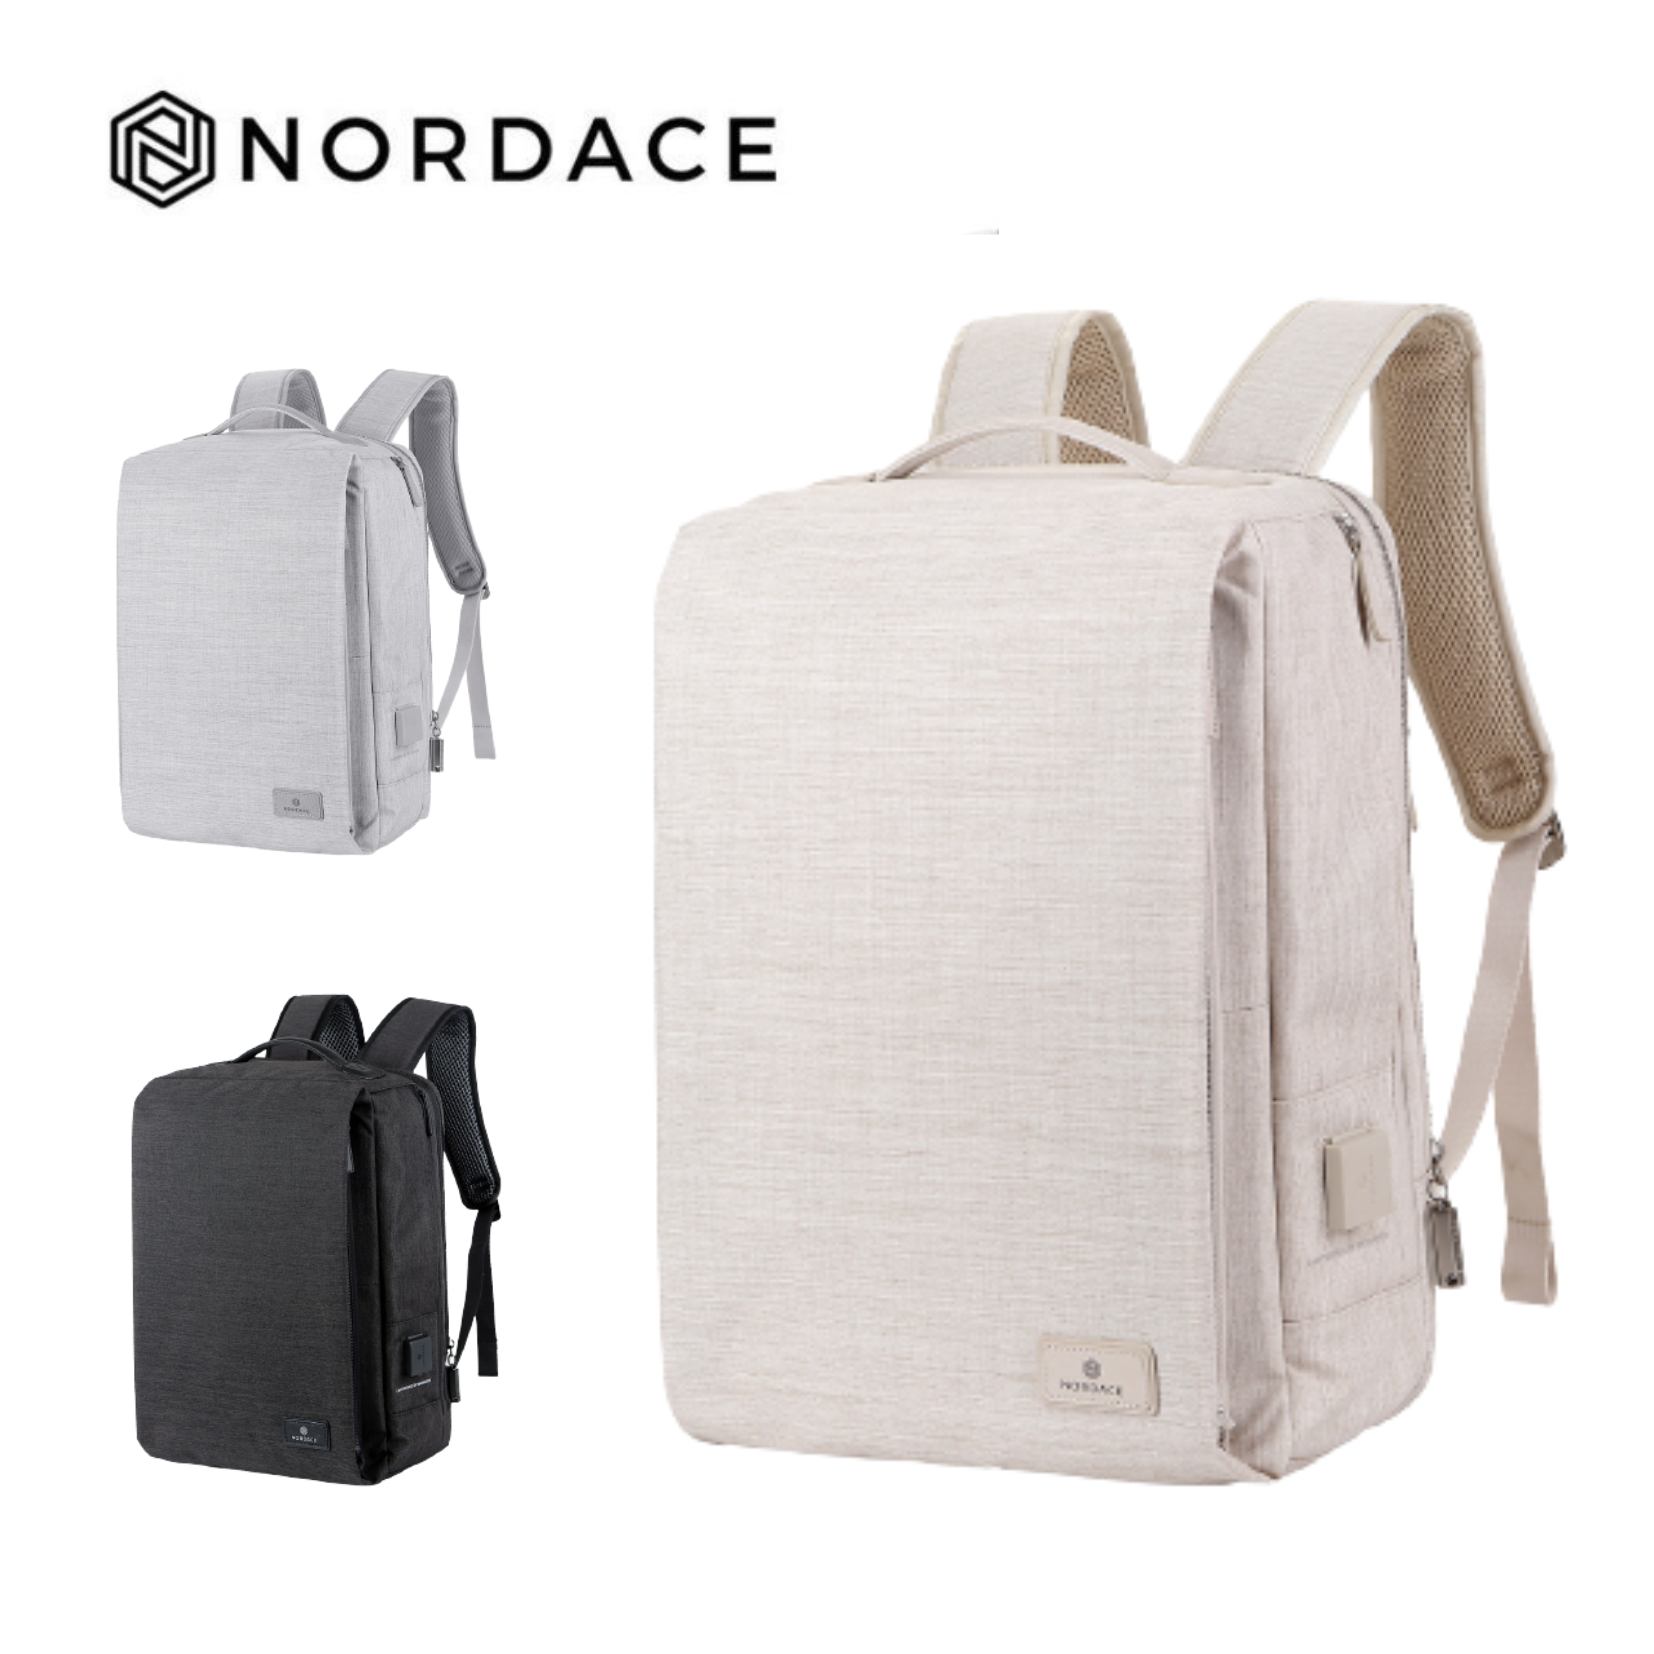 Nordace Siena II 時尚智能背包 充電雙肩包 充電背包 筆電包 電腦包 旅行包 休閒包 防水背包 後背包 雙肩包 3色可選-米色